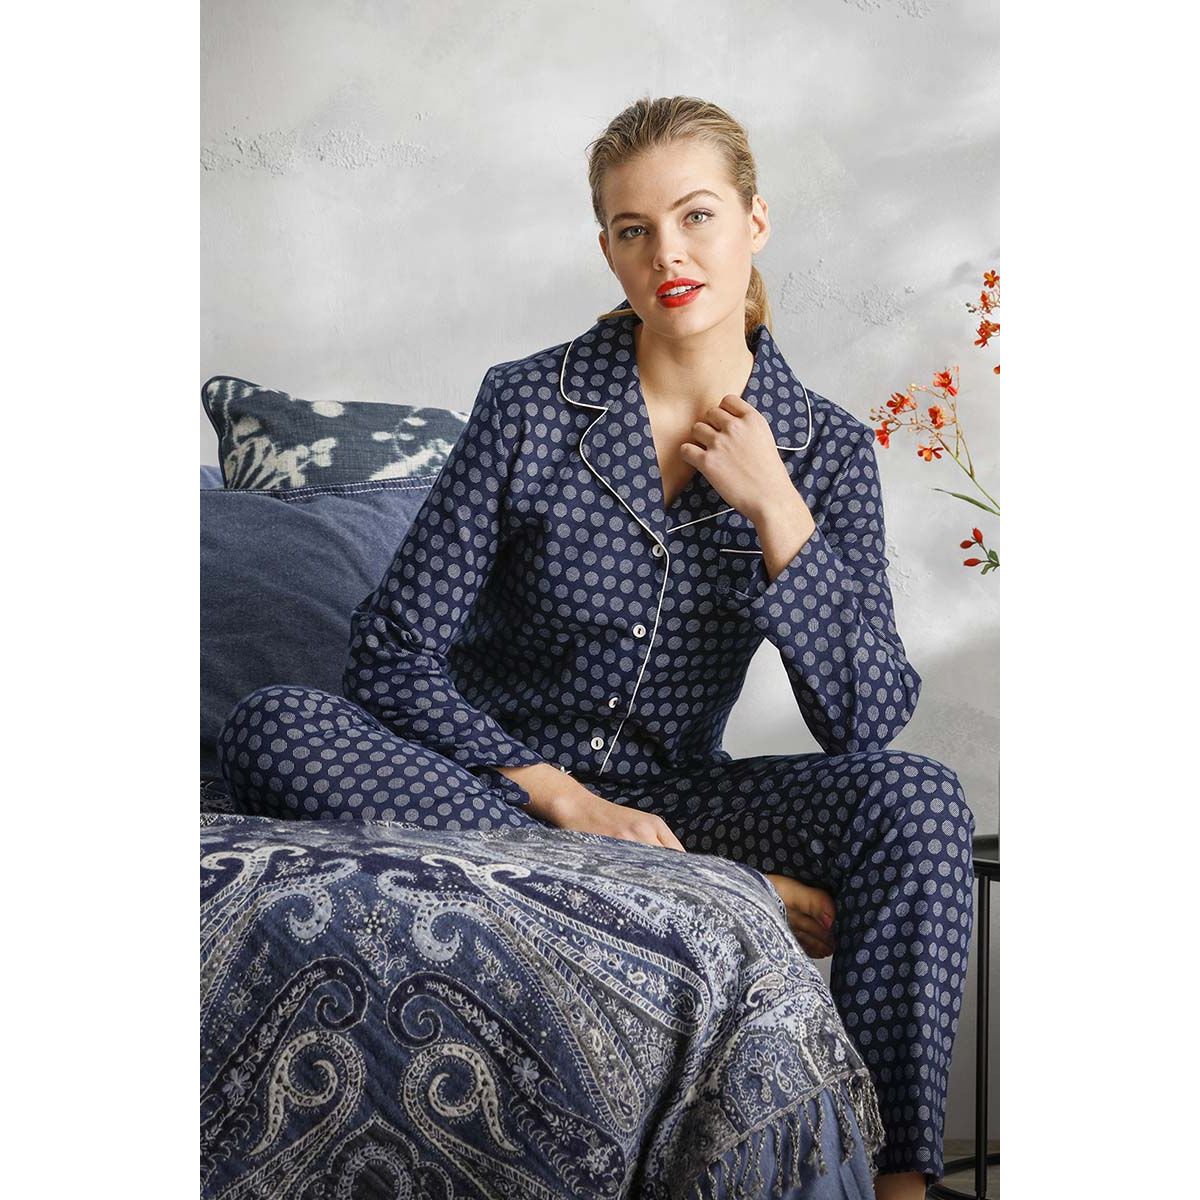 flanellen doorknoop dames pyjama | Gratis verzending en retour | mooiste pyjama's, nachthemden, en meer